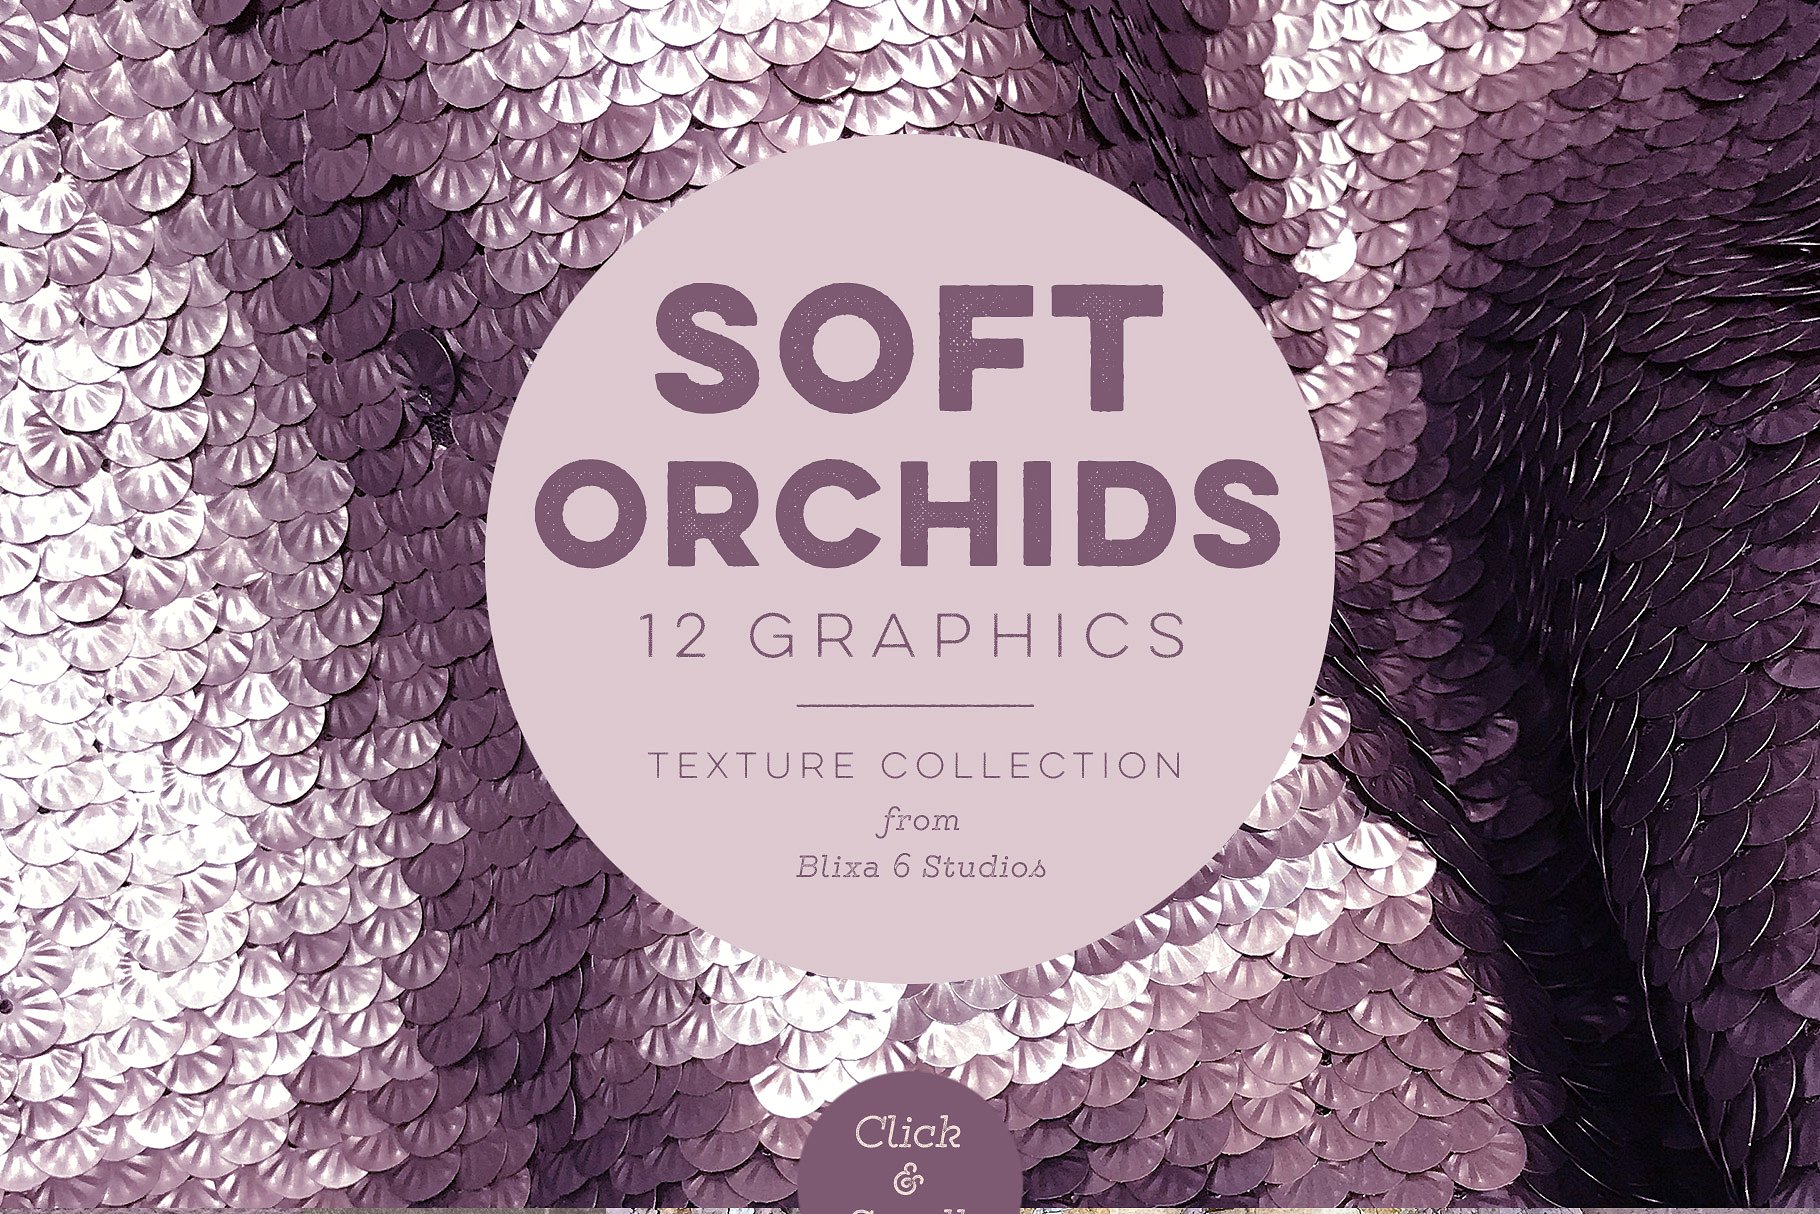 高端紫罗兰色调大理石背景纹理 Soft Orchid Textured Backgrounds插图(1)